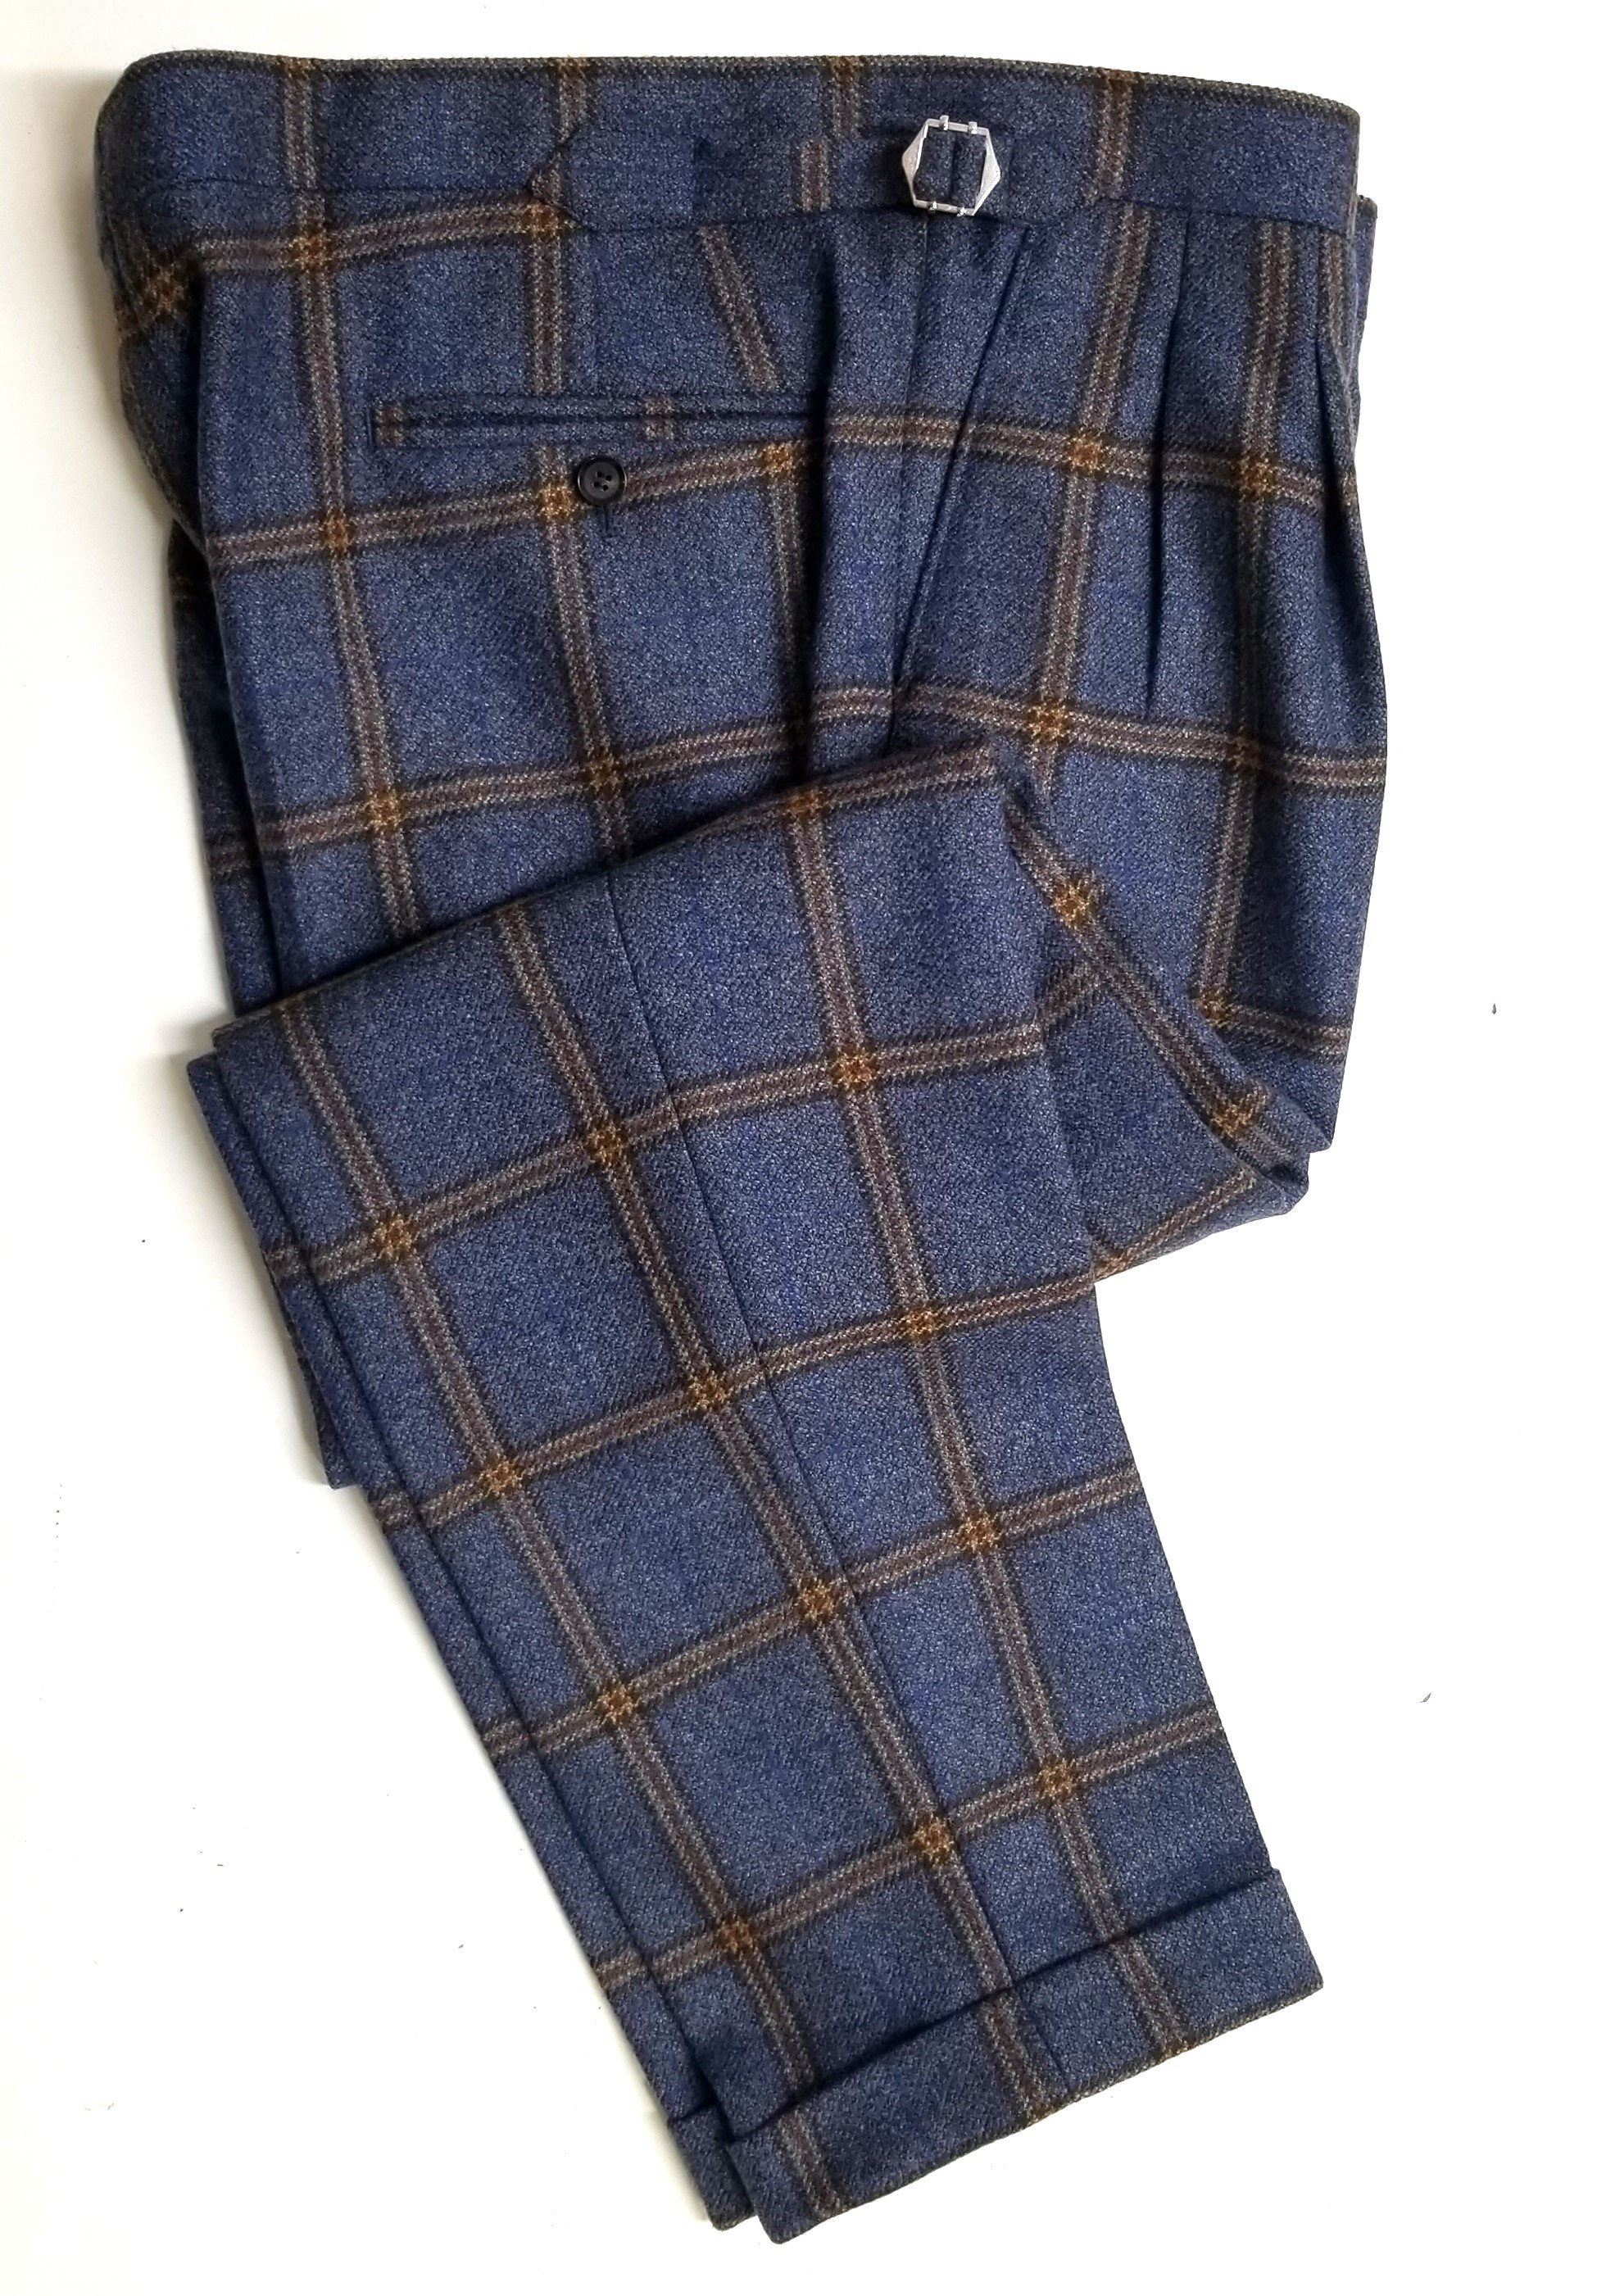 3 Piece suit in blue check tweed (1).jpg